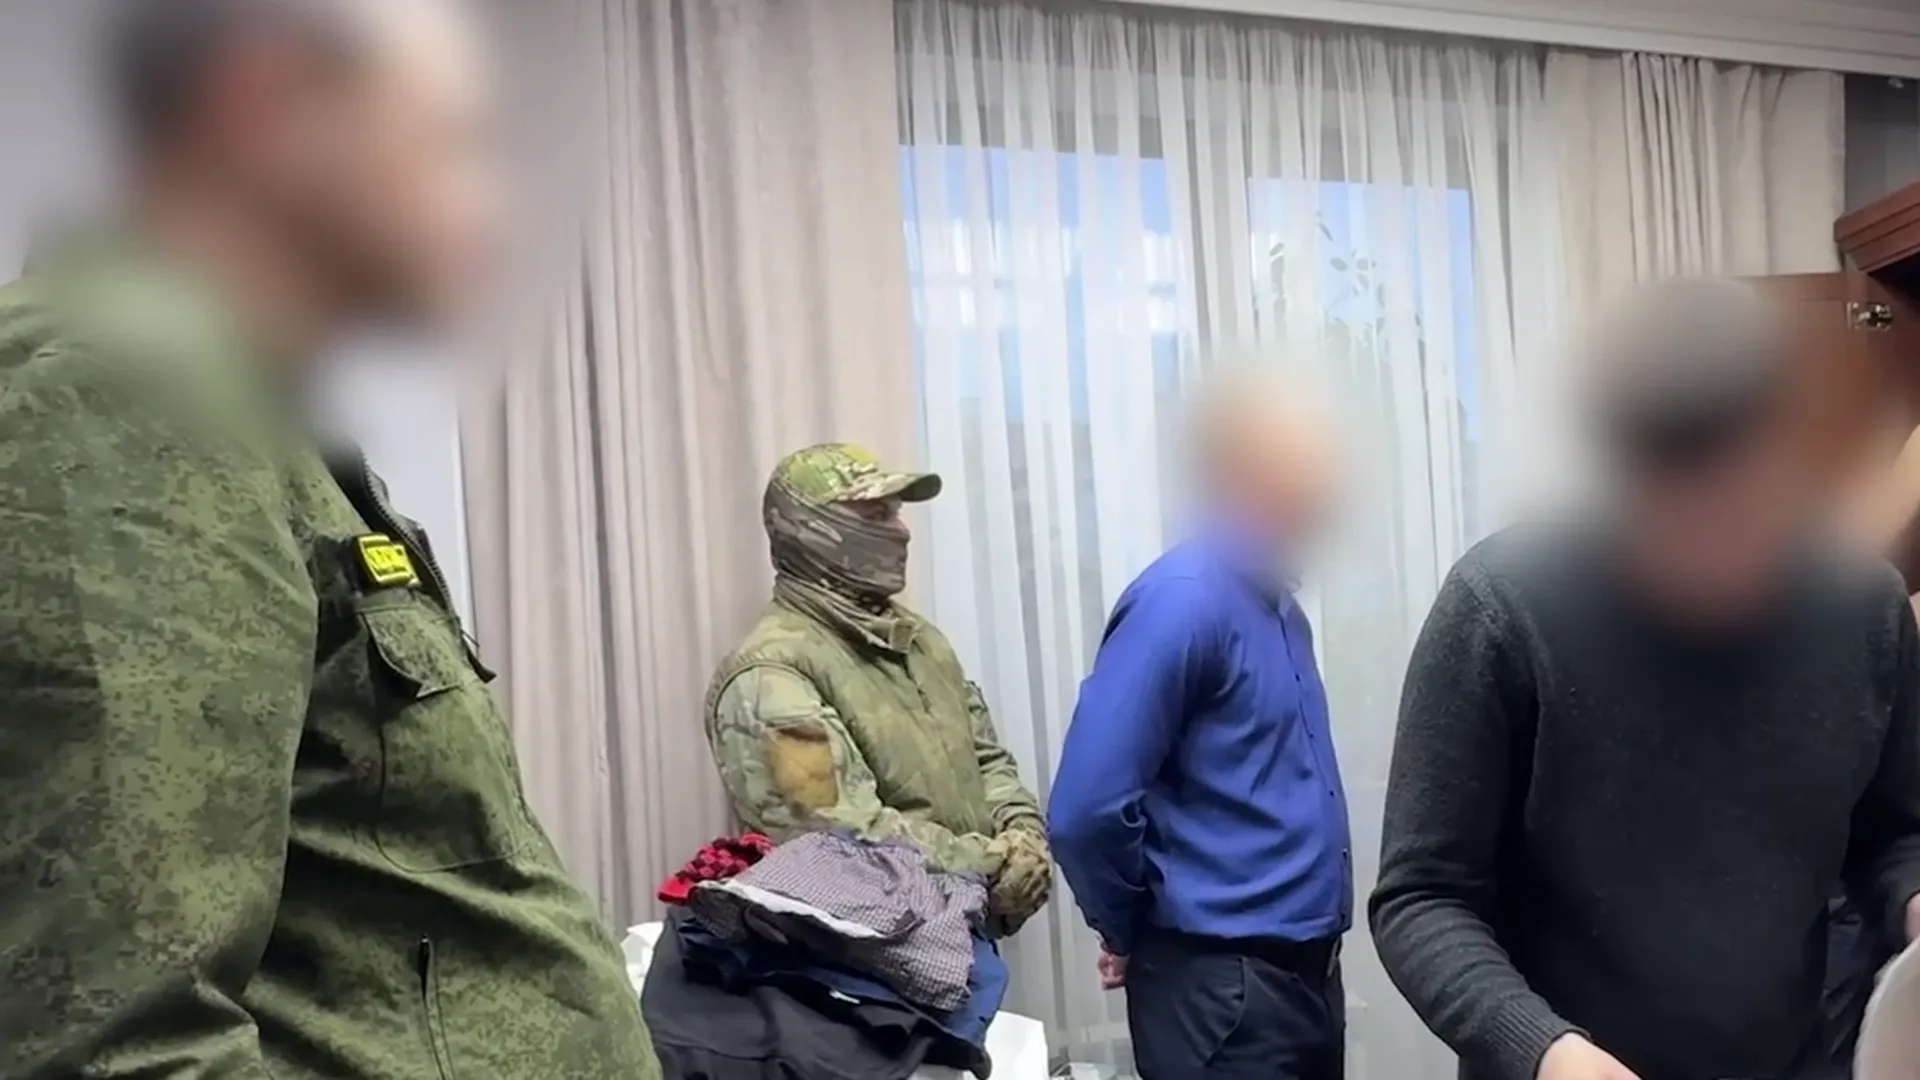 Экс-замгубернатора Кузбасса арестовали в посредничестве во взяточничестве на 7 млн рублей